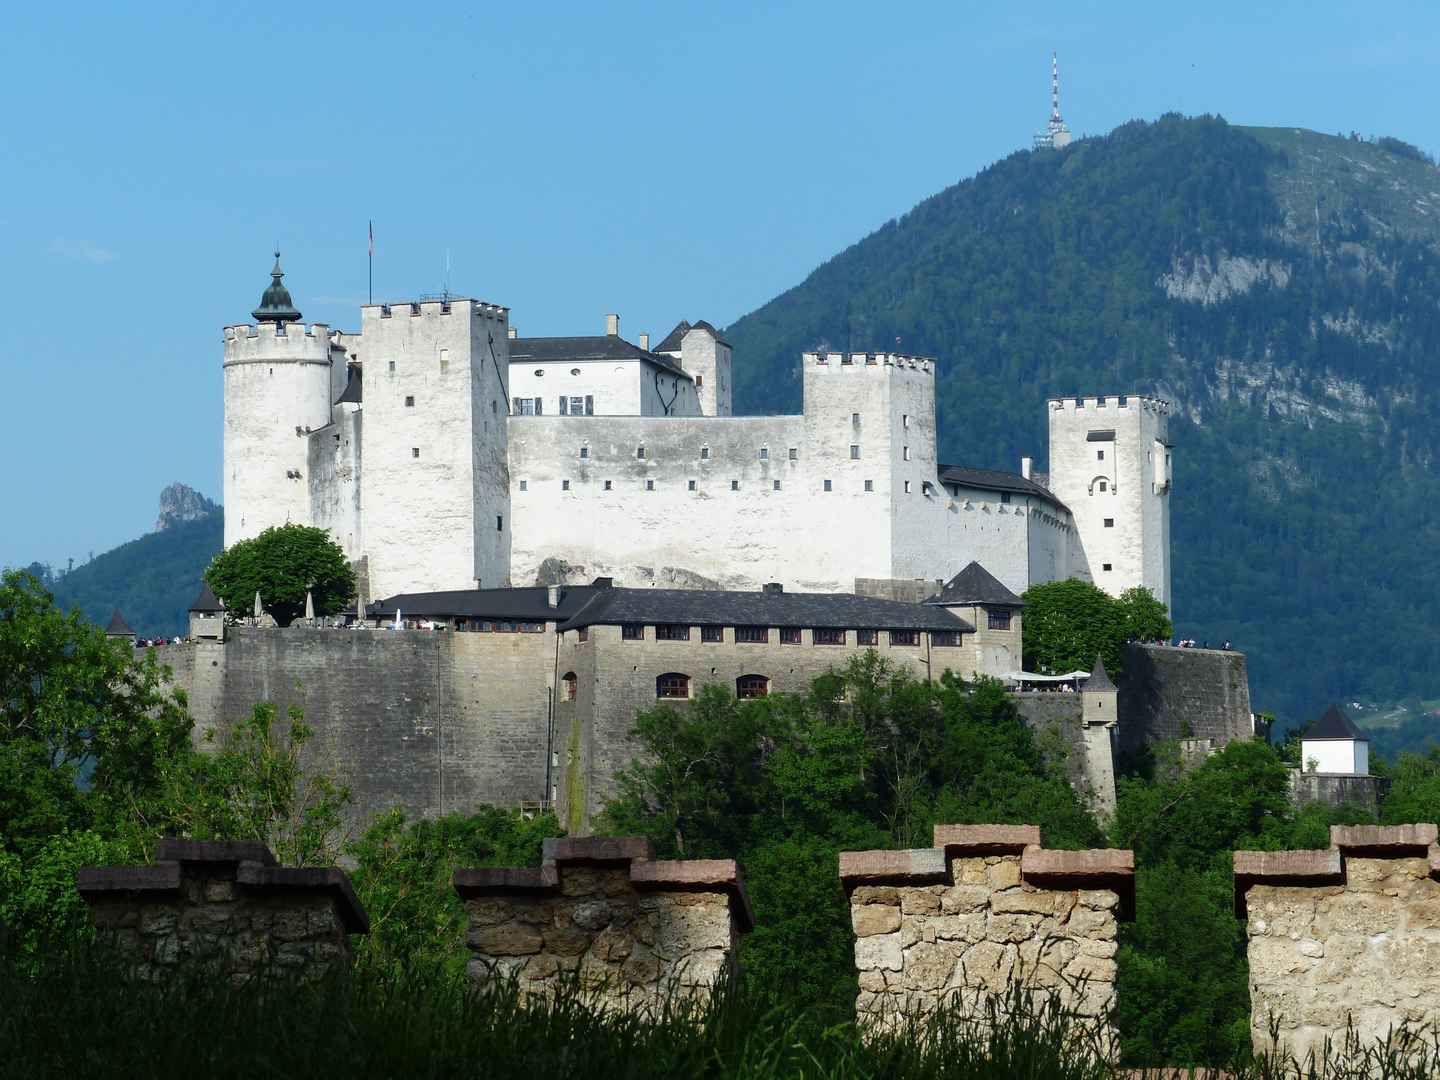 奥地利萨尔茨堡建筑风景图片